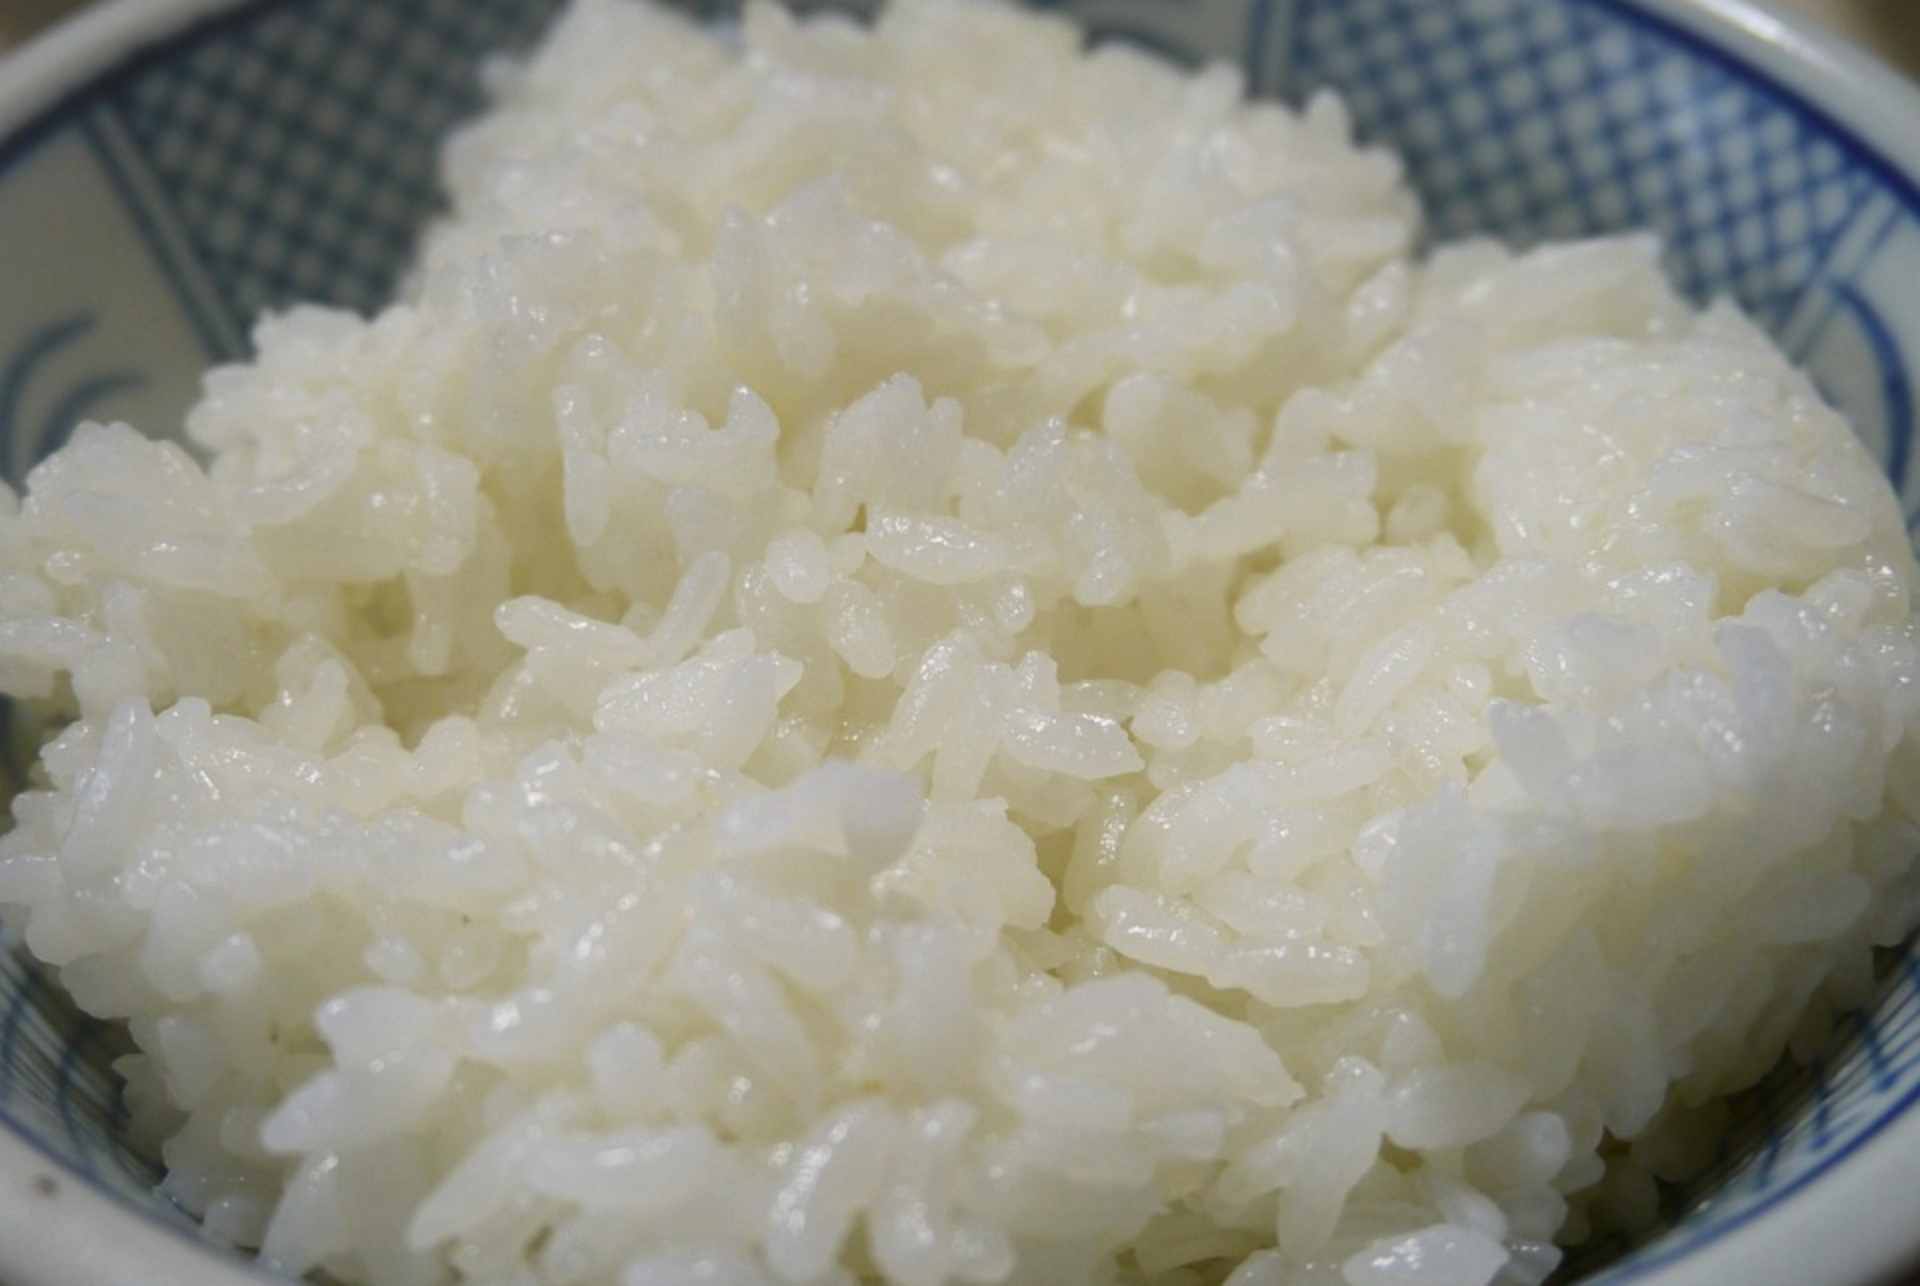 Aprenda a preparar esse arroz no micro-ondas em apenas 15 minutos.